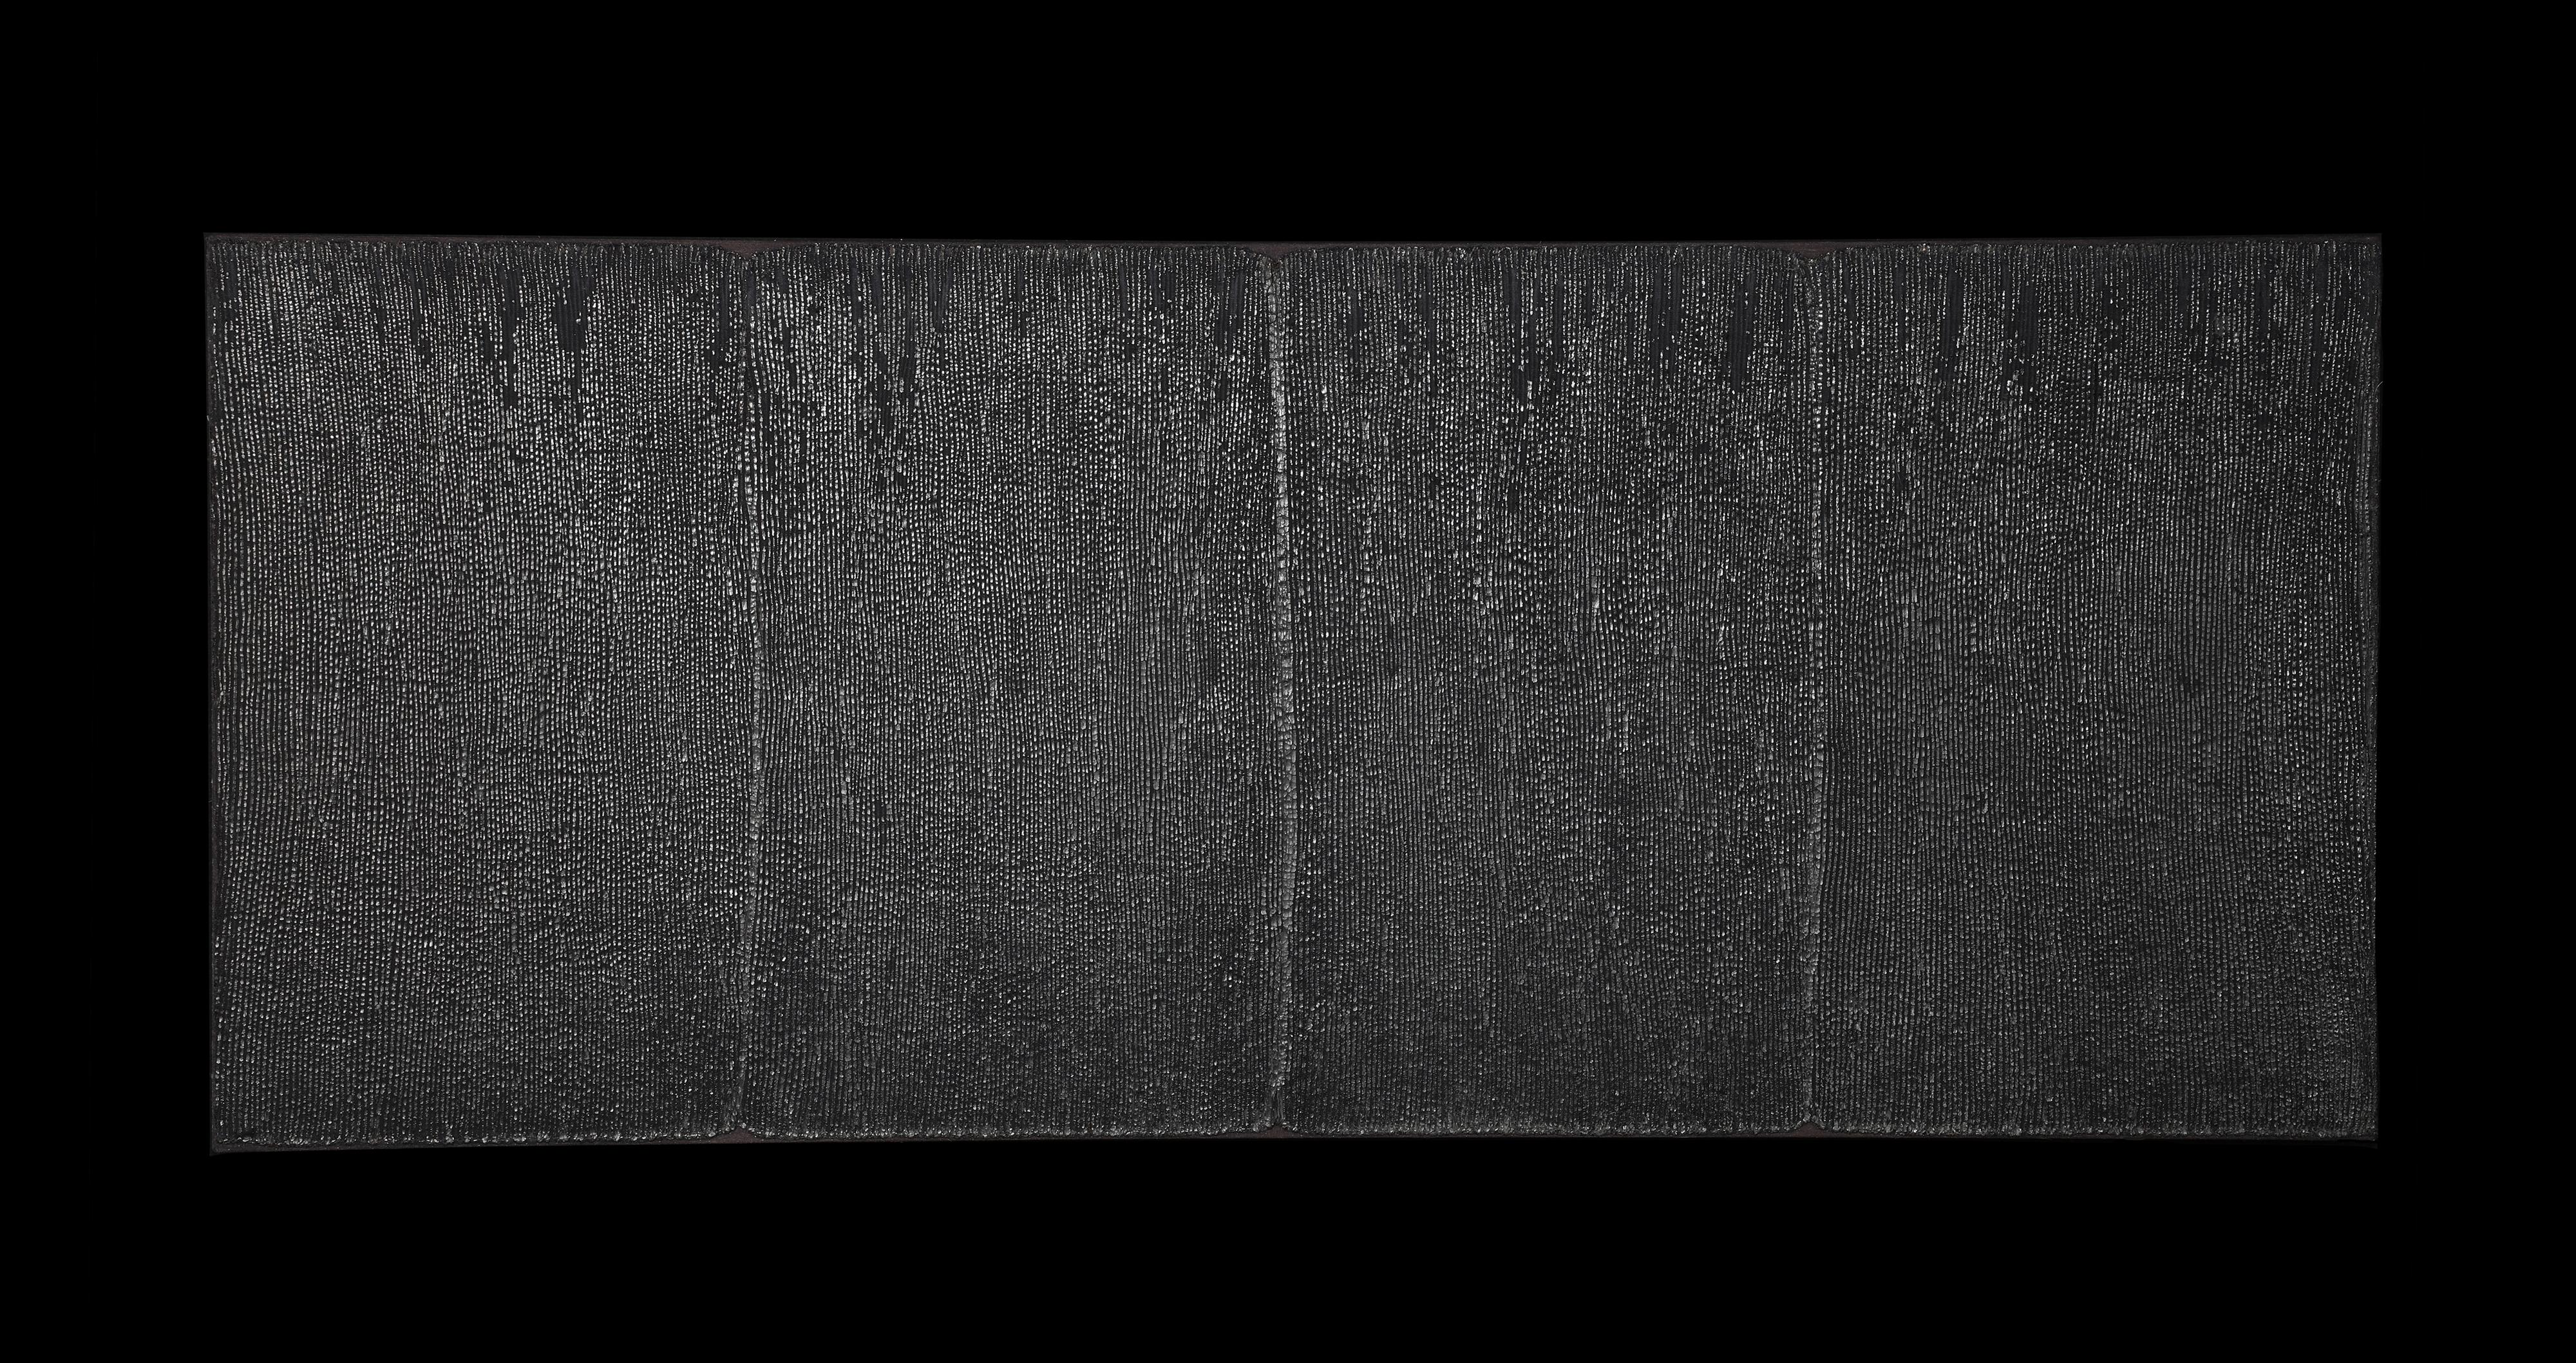 Panneau d'une jupe de cérémonie pour femme
Peuple Miao, province de Guizhou, Chine
20ème siècle
49.5 x 20.75 pouces  (126 x 53 cm)
Les panneaux de coton sont teints à l'indigo, puis cousus ensemble avant d'être plissés. Une pâte épaisse d'indigo est